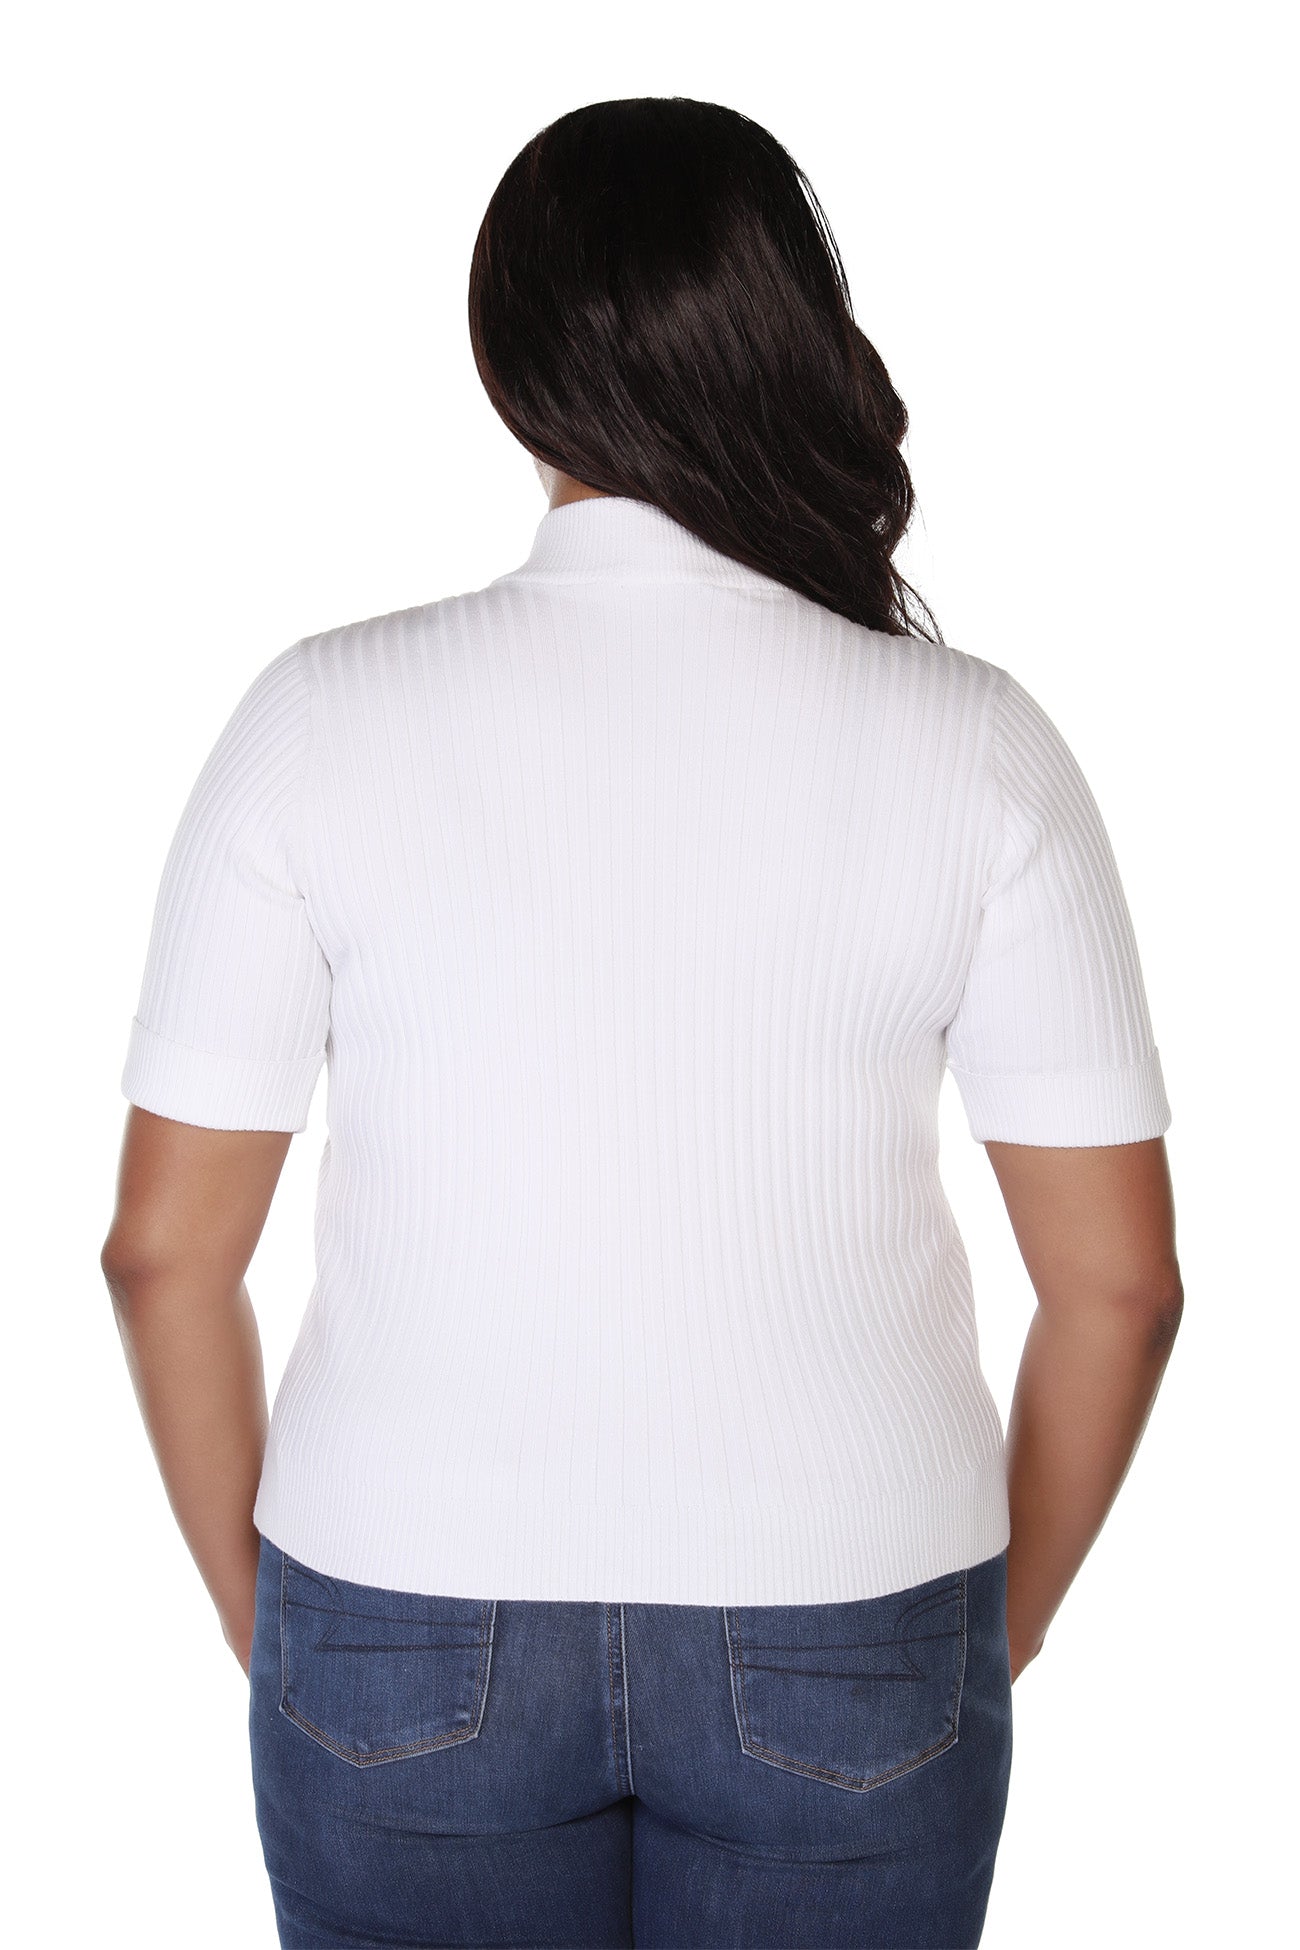 Jersey tipo jersey para mujer con cremallera frontal en punto acanalado | con curvas